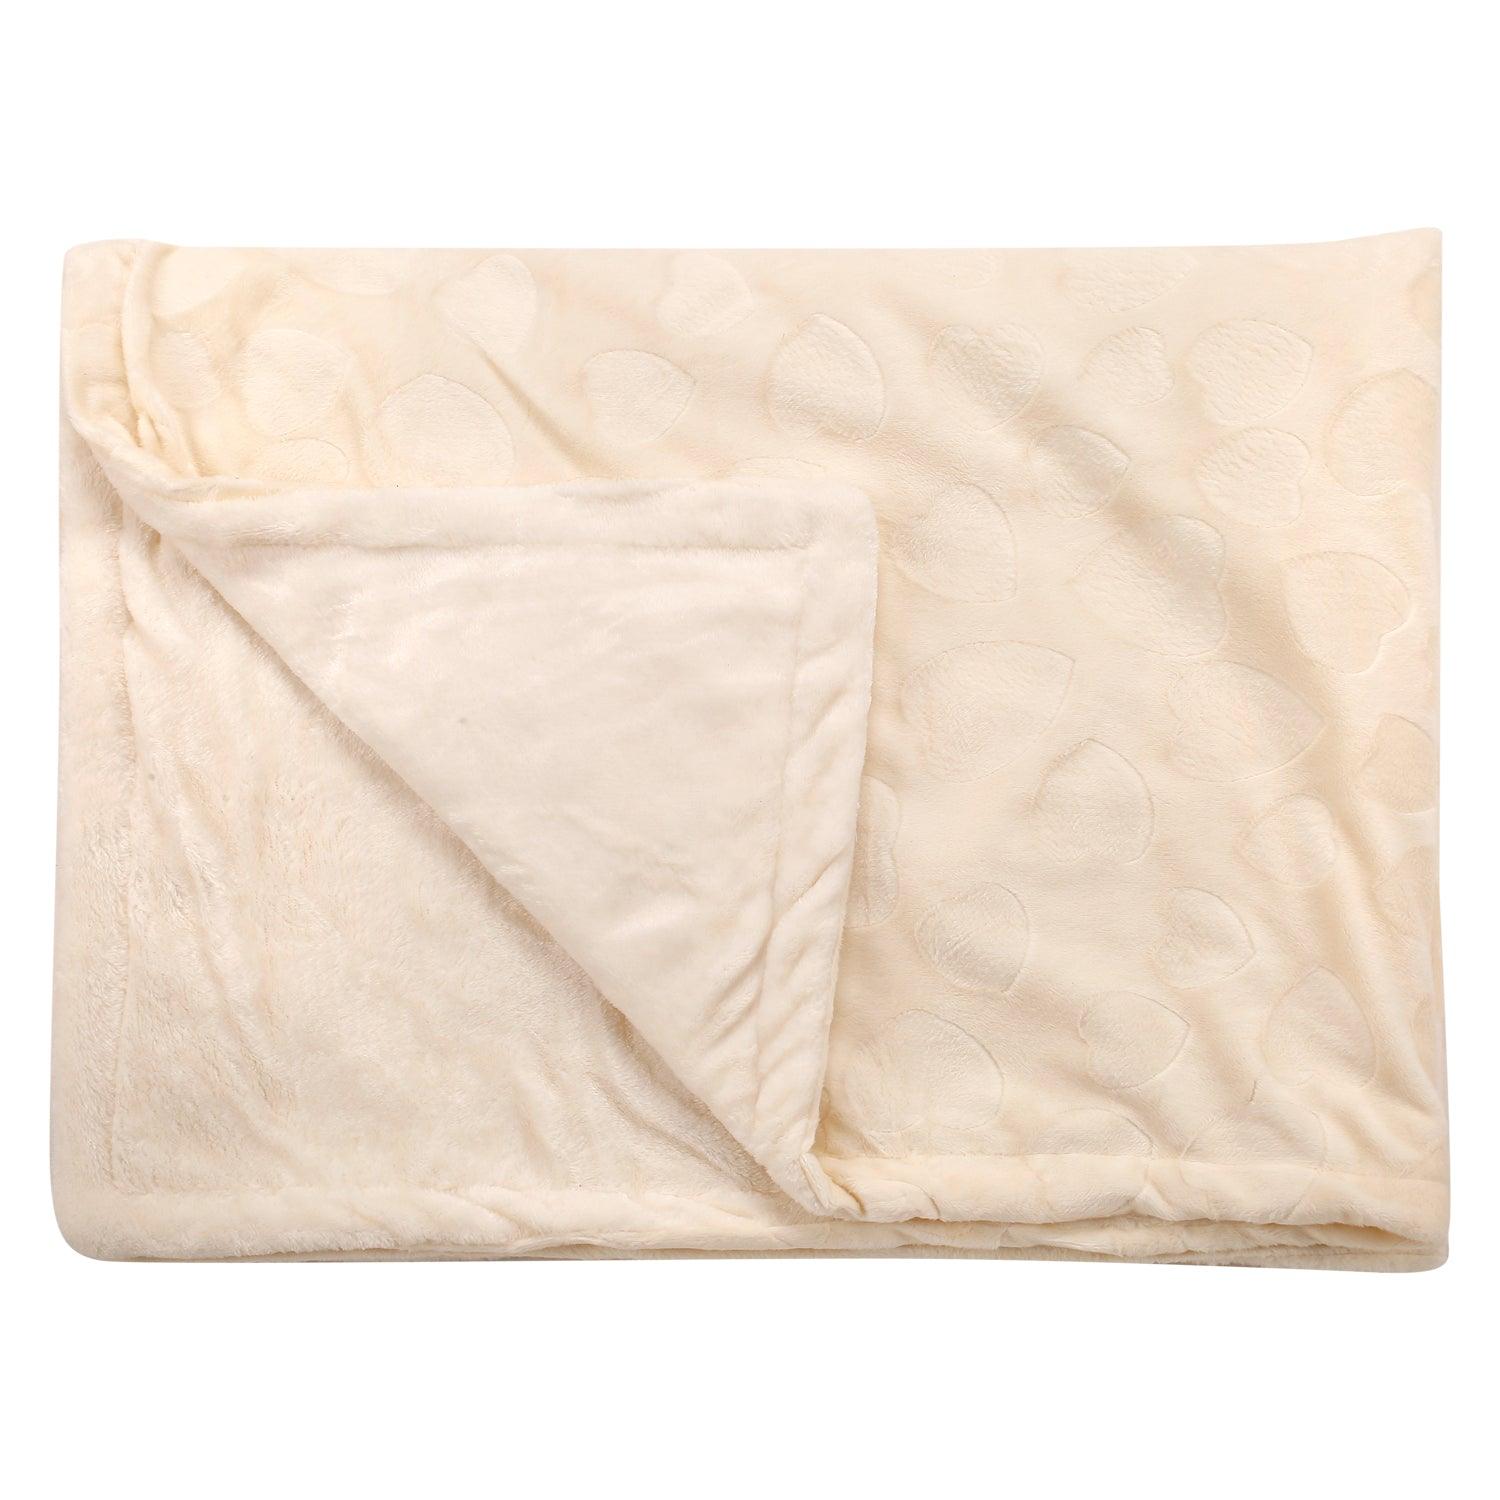 Heart Cream Textured Beige Blanket - Baby Moo